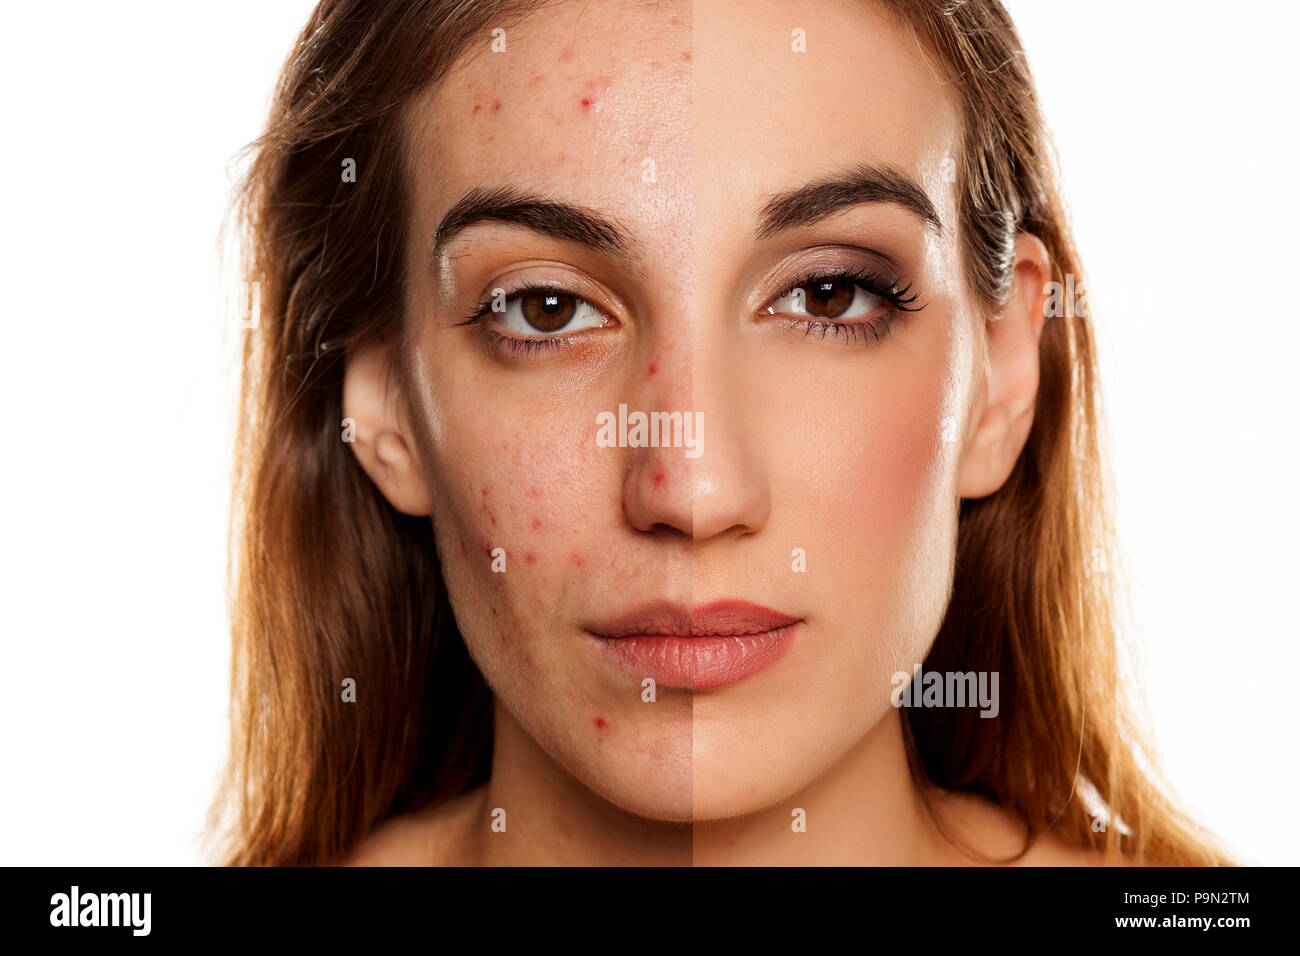 Comparition Porträt der gleichen Frau vor und nach der kosmetischen Behandlung amd Make-up auf weißem Hintergrund Stockfoto